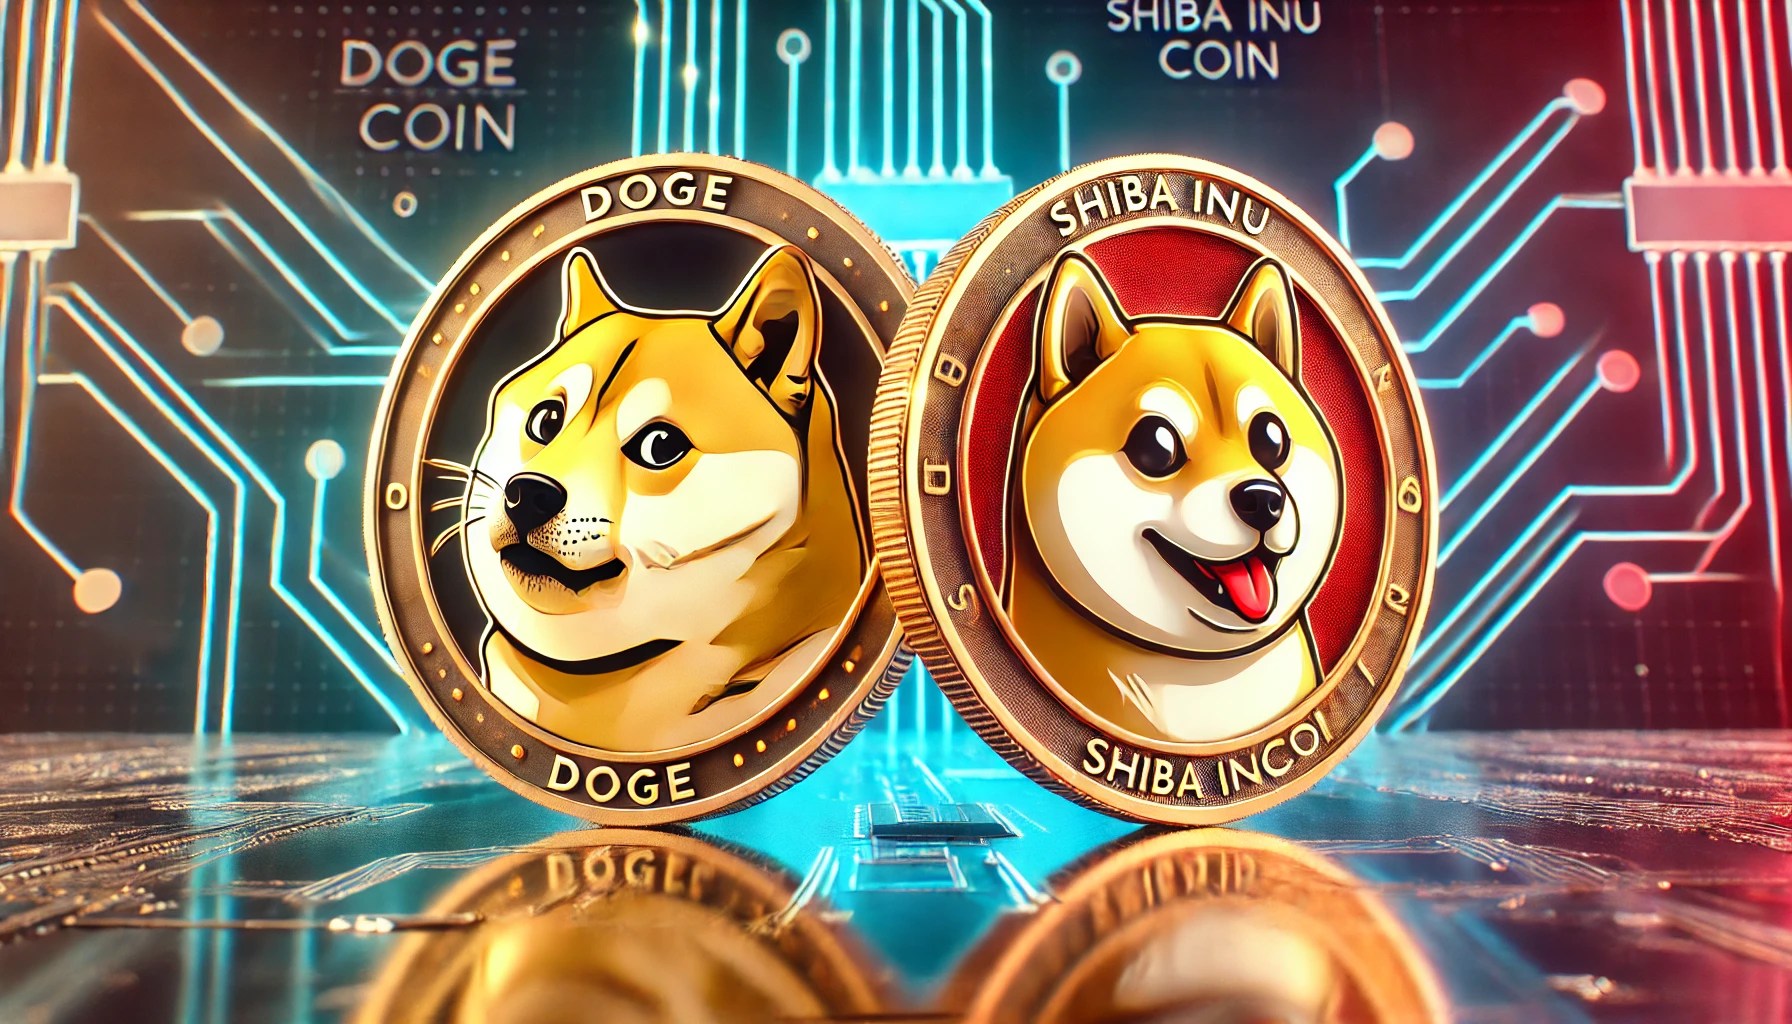 Dogecoin과 Shiba Inu 가격이 횡보 거래를 하는 이유는 무엇입니까?